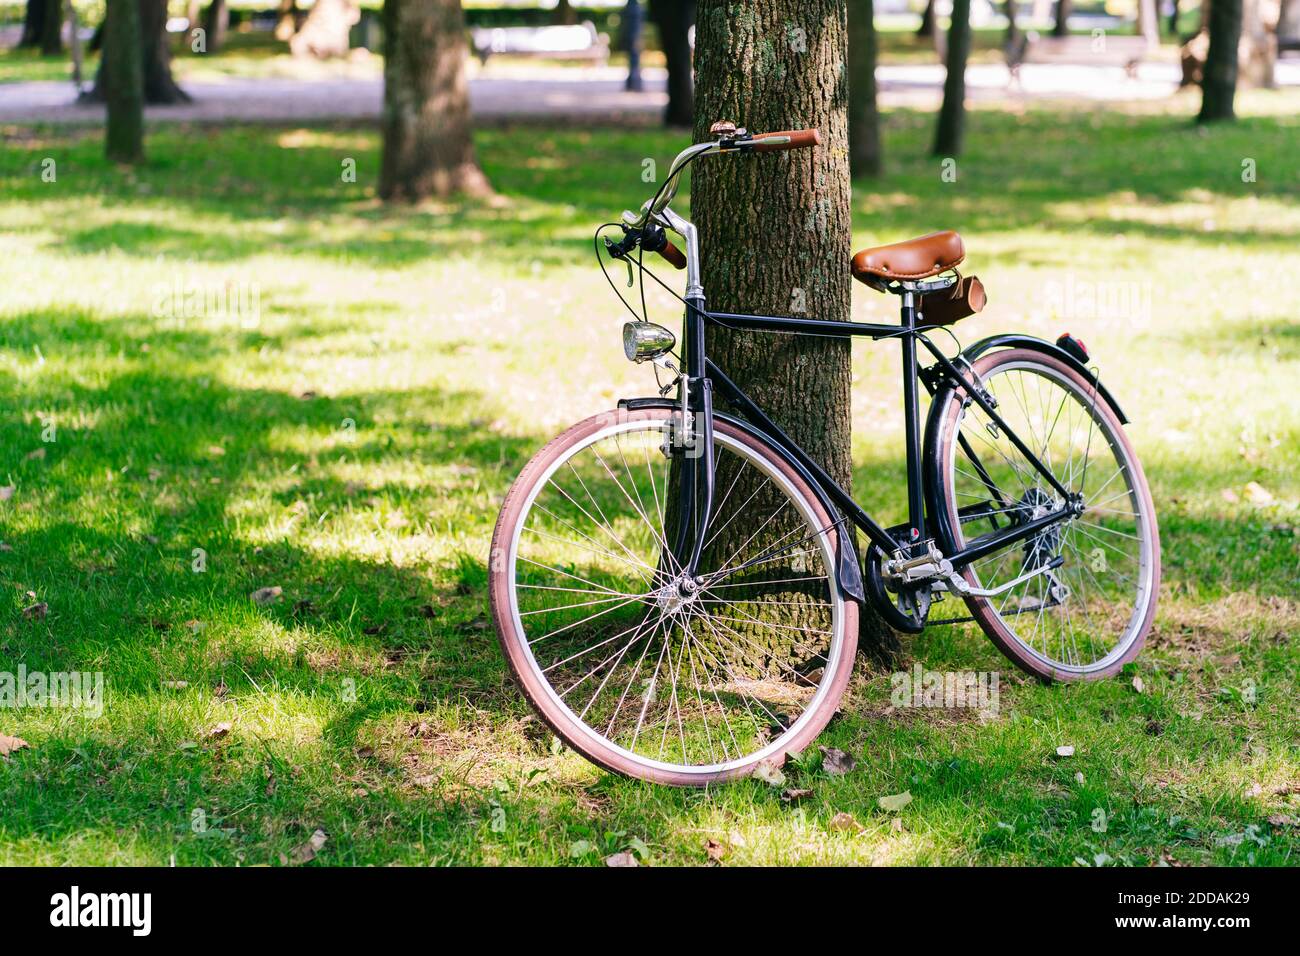 Fahrrad geparkt auf Rasen im öffentlichen Park Stockfoto